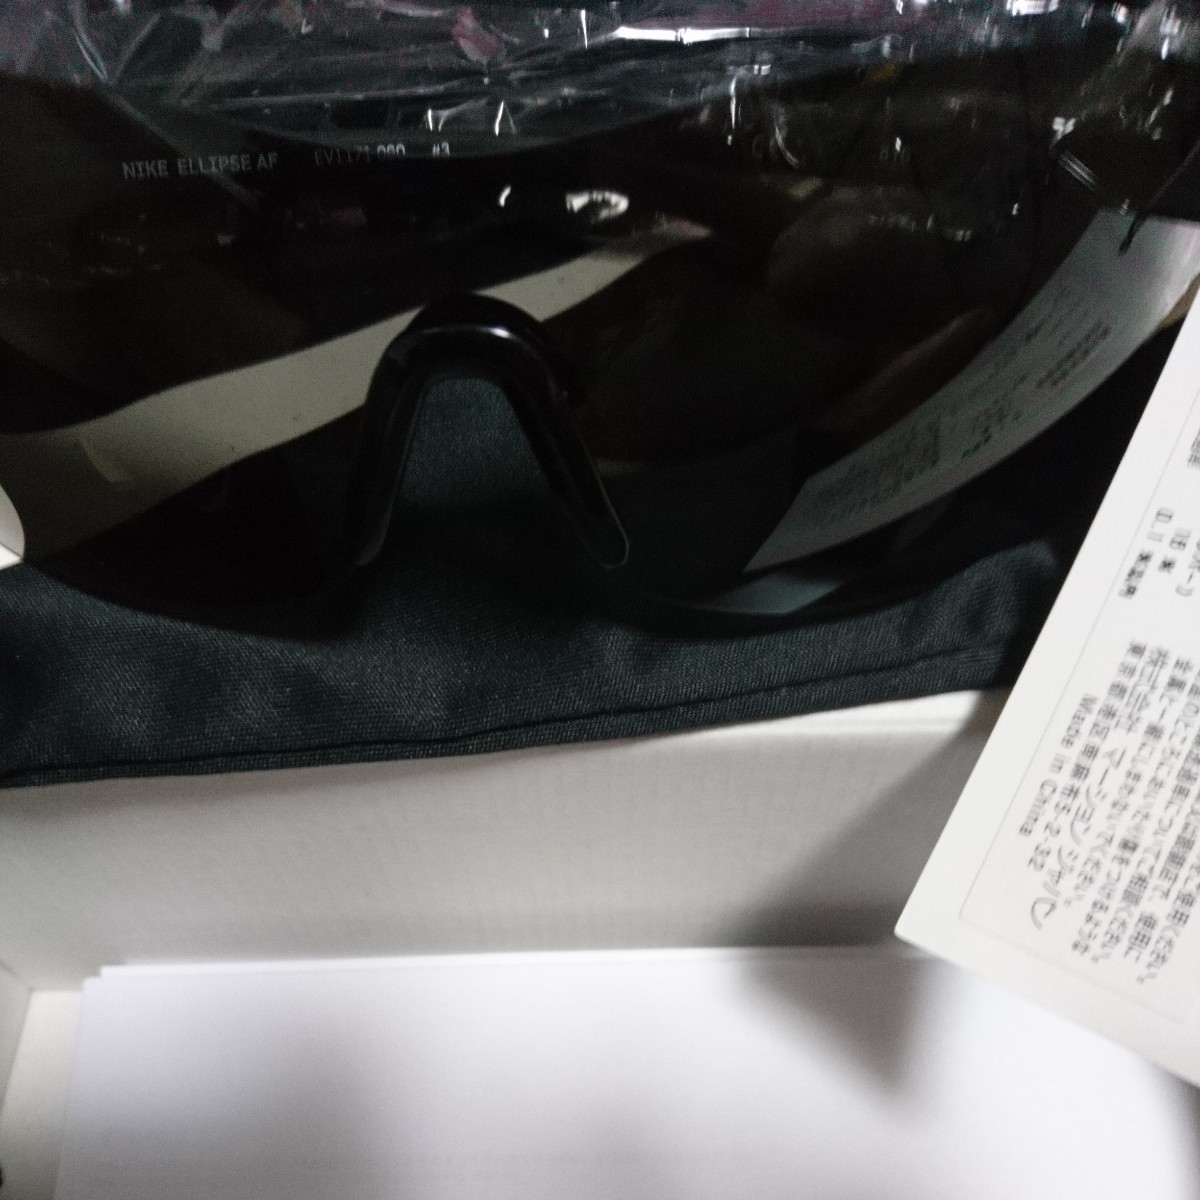 ☆新品ナイキ NIKE ELLIPSE AF ellipse af EV1172 060 ナイキ サングラス nike sunglasses uvカット MAXOPTICS 定価25,300円_画像5